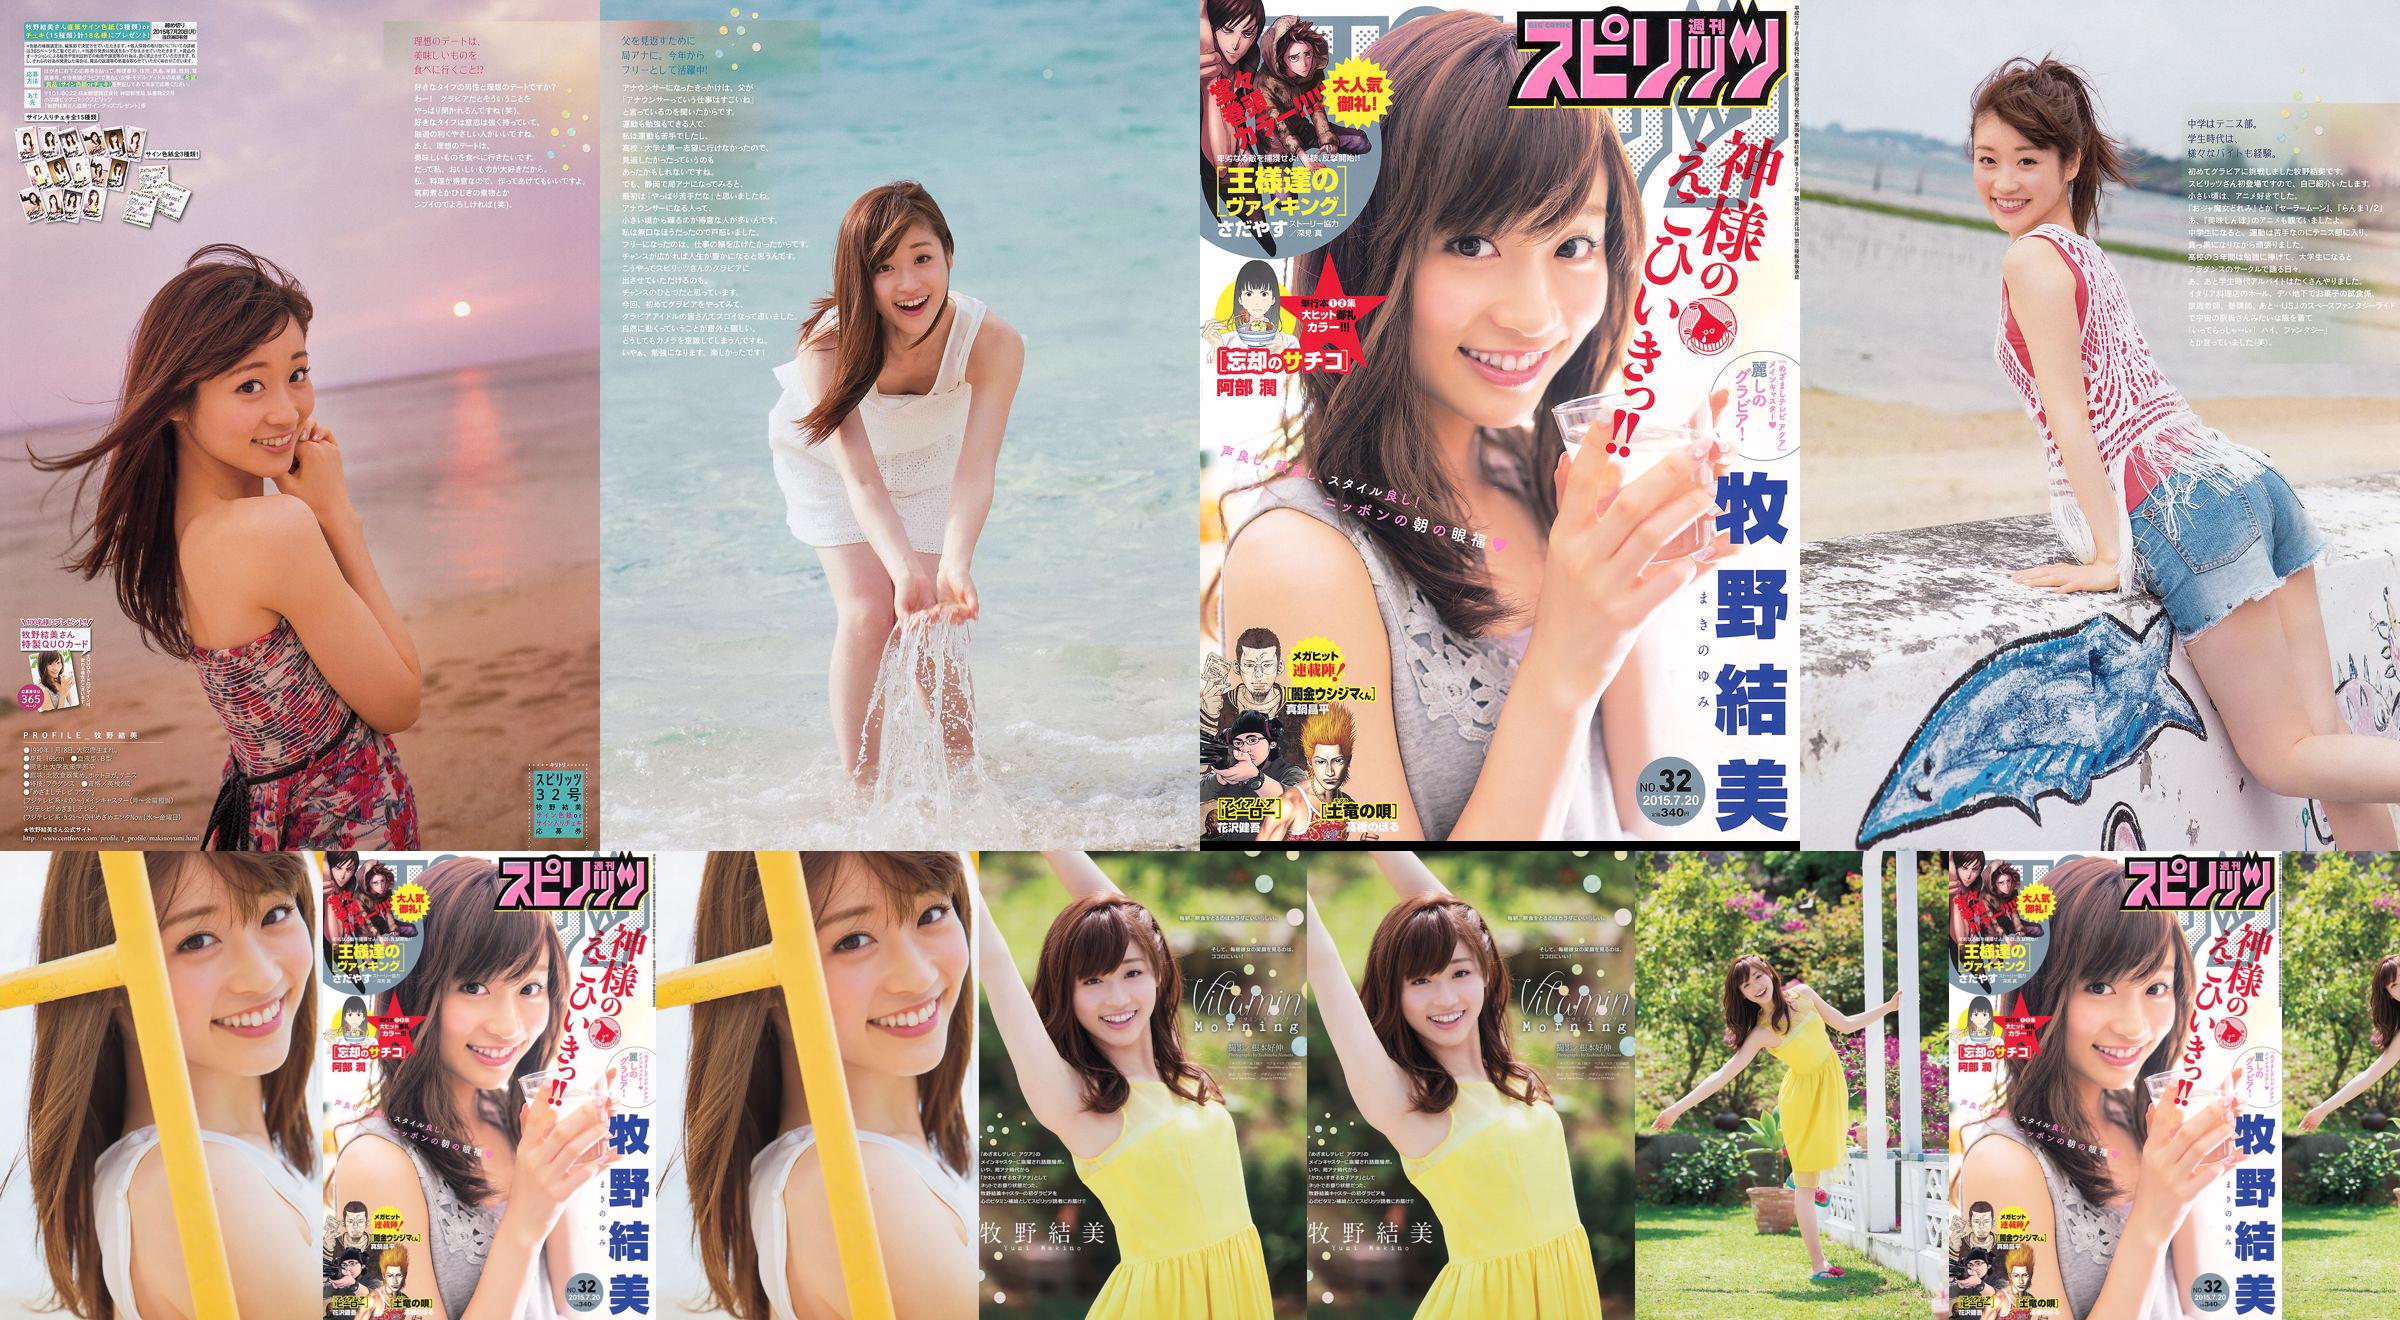 [Weekly Big Comic Spirits] Yumi Makino 2015 No.32 Photo Magazine No.da1550 Pagina 3